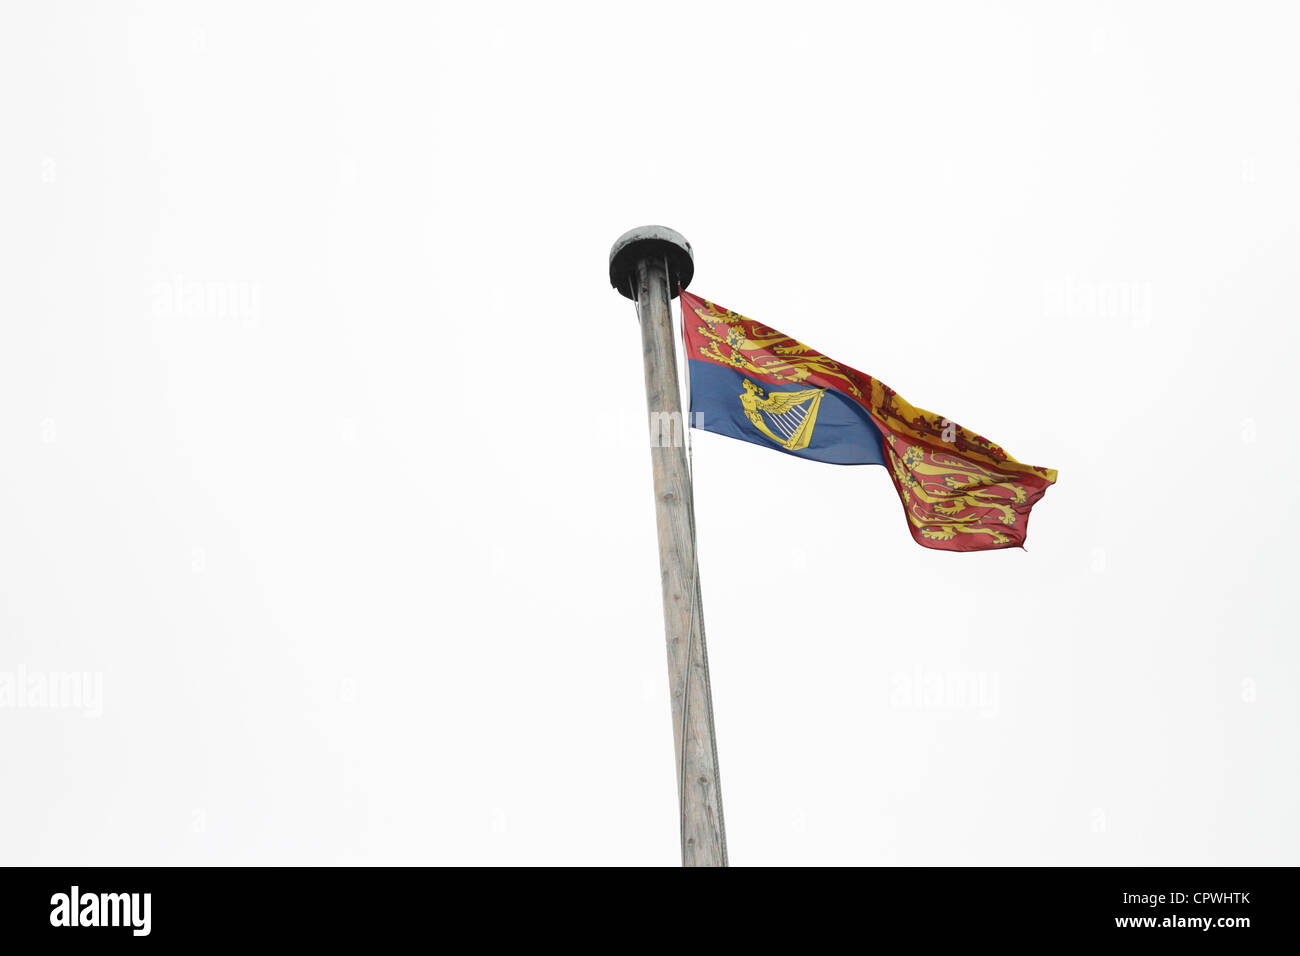 Il castello di Windsor - Royal Standard, il volo come la regina è in residenza. In Inghilterra, Galles e Irlanda del Nord e al di fuori del Regno Unito, il flag è diviso in quattro quadranti. La prima e la quarta quadranti rappresentano l'antico regno di Inghilterra e contenere tre leoni d'oro, (o "Leopardi"), passant gardant su un campo rosso; il secondo quadrante rappresenta l'antico regno di Scozia e contiene un leone rosso rampante in campo oro; il terzo quadrante rappresenta l'antico regno di Irlanda e contiene una versione dell'arpa in oro con lo stemma del Irlanda su un campo blu. Foto Stock